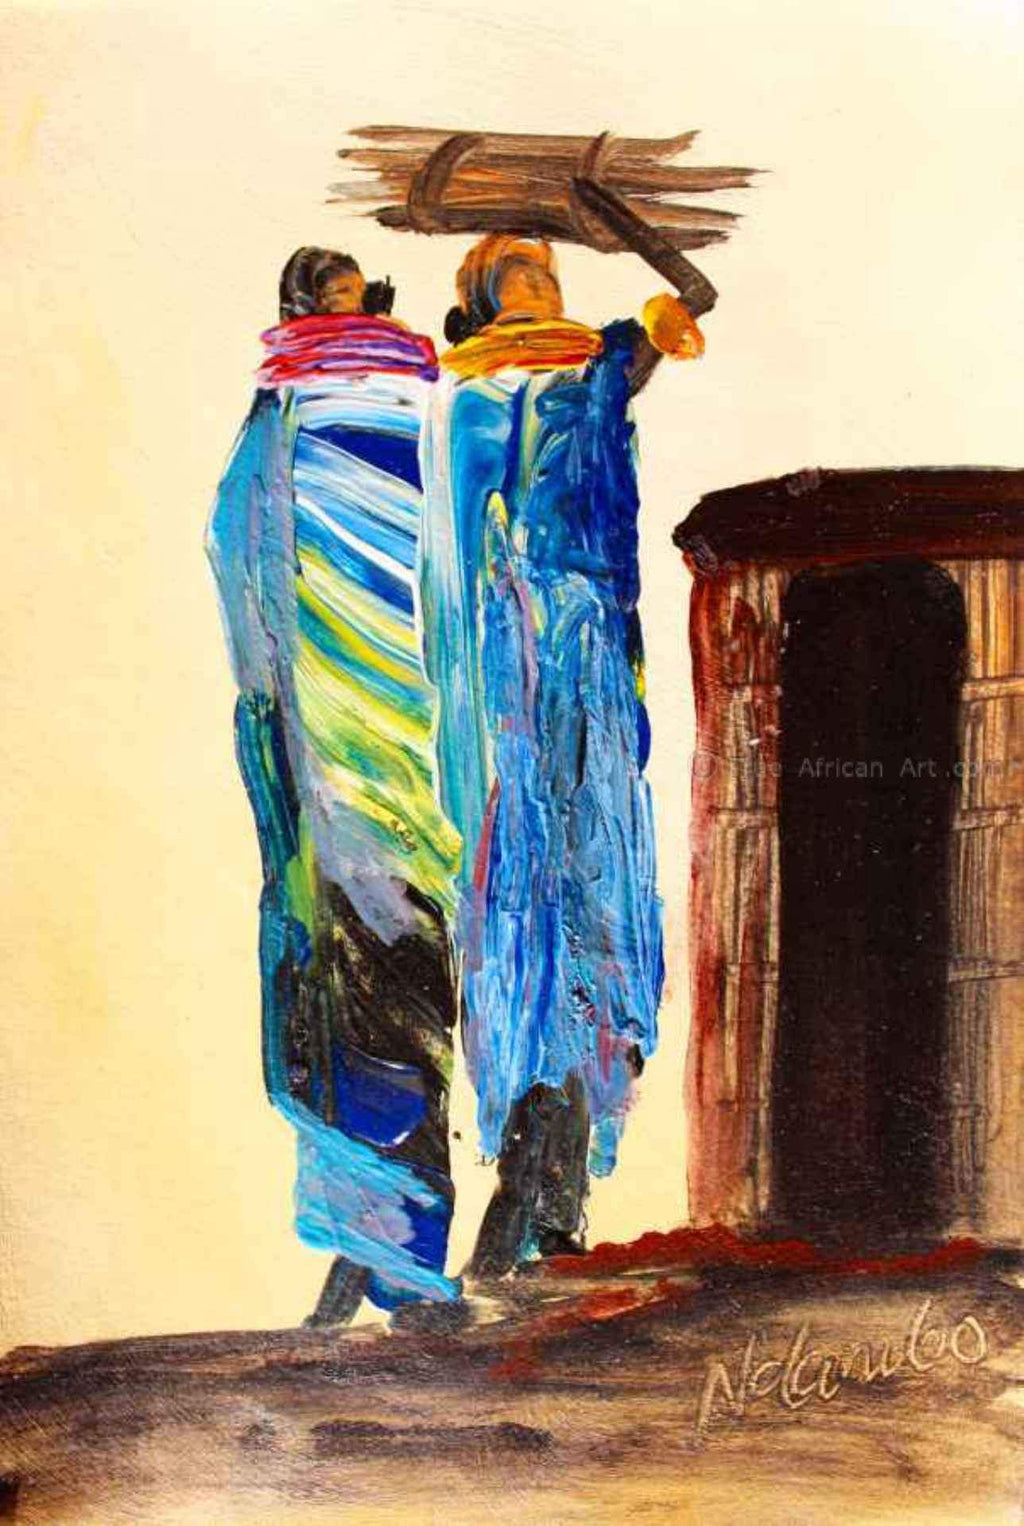 John Ndambo  |  Kenya  |  N-110 |  Print  |  True African Art .com